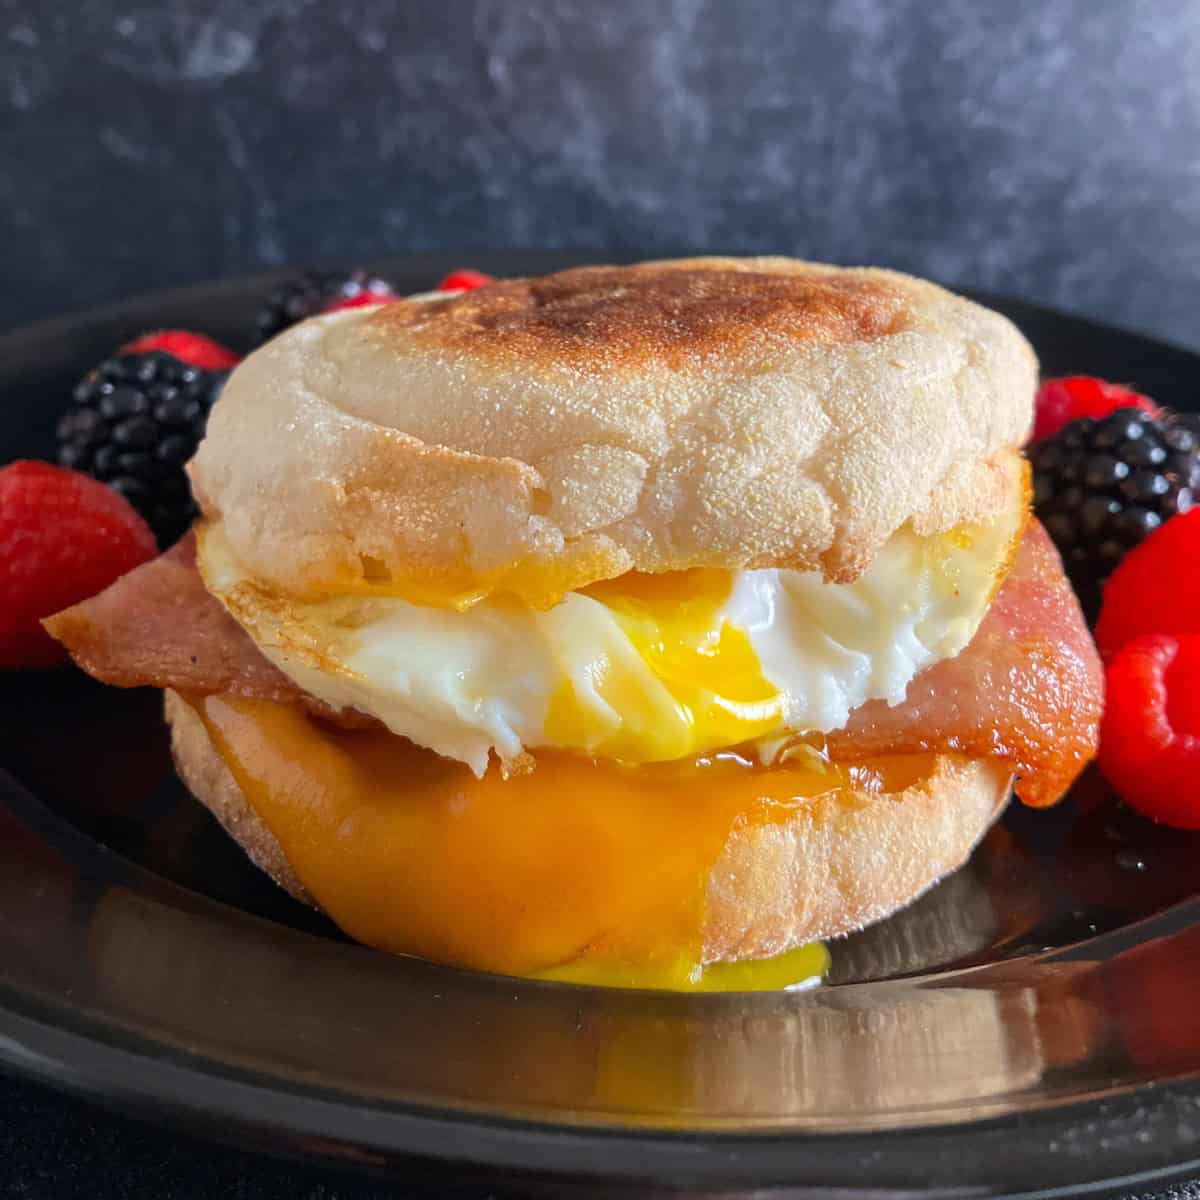 https://summeryule.com/wp-content/uploads/2021/12/air-fryer-breakfast-sandwich.jpeg